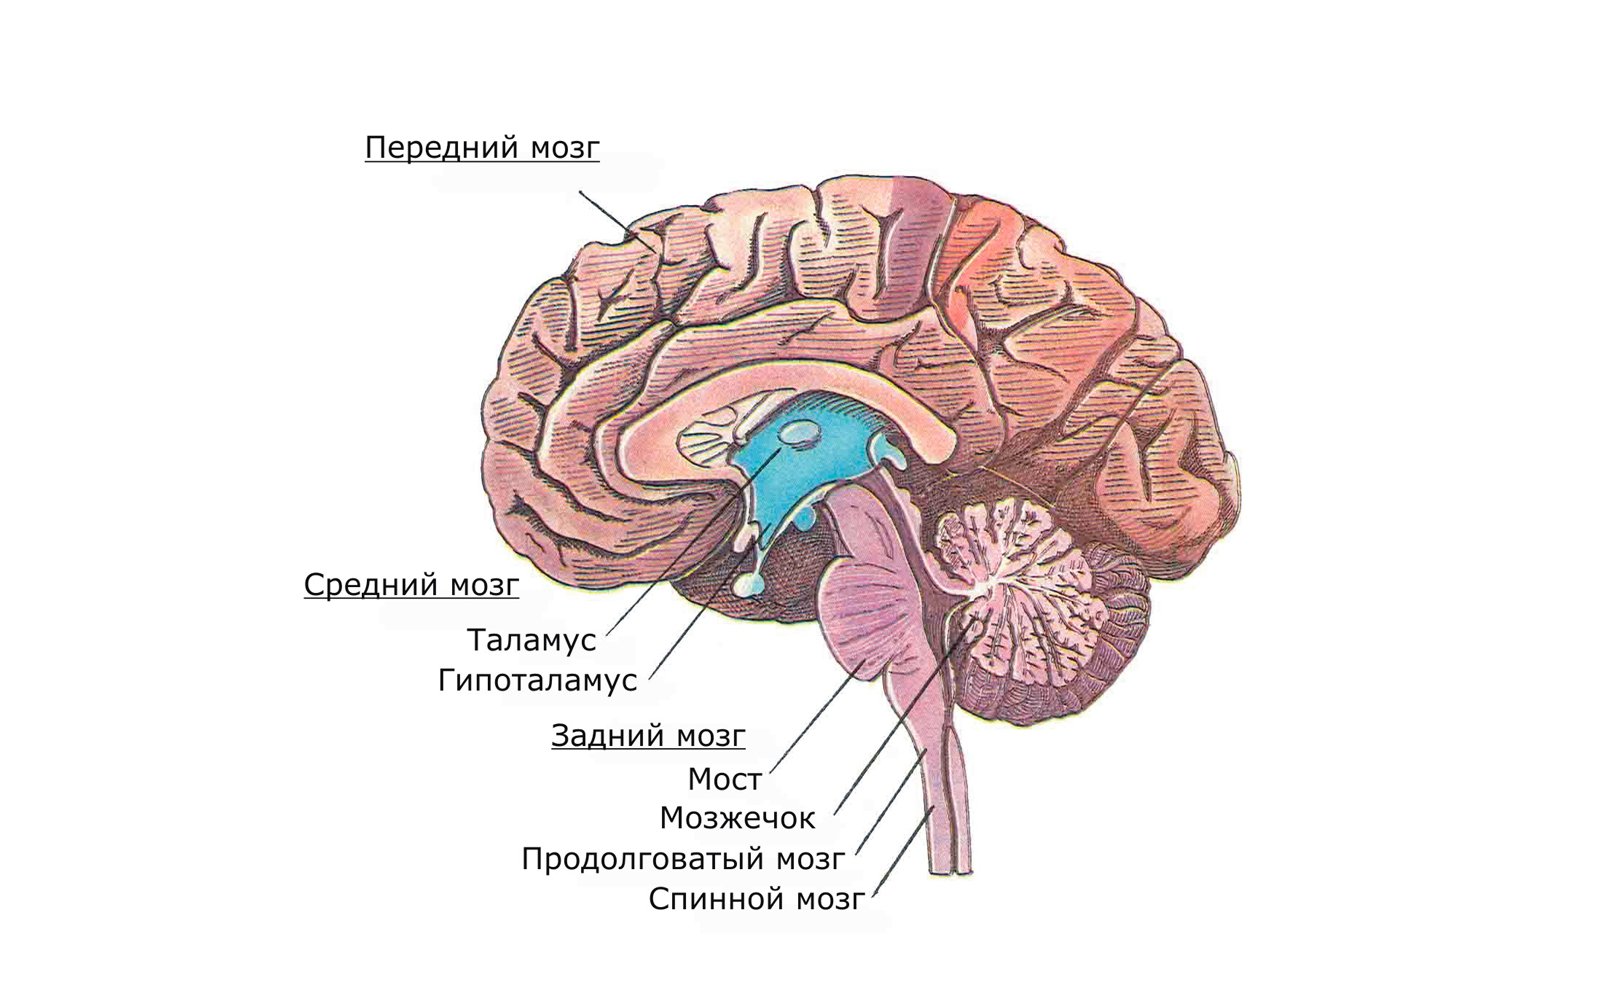 Мост мозга состоит из. Головной мозг продолговатый средний задний промежуточный. Головной мозг варолиев мост. Передний мозг мозжечок и ствол мозга. Задний мозг мост и мозжечок.